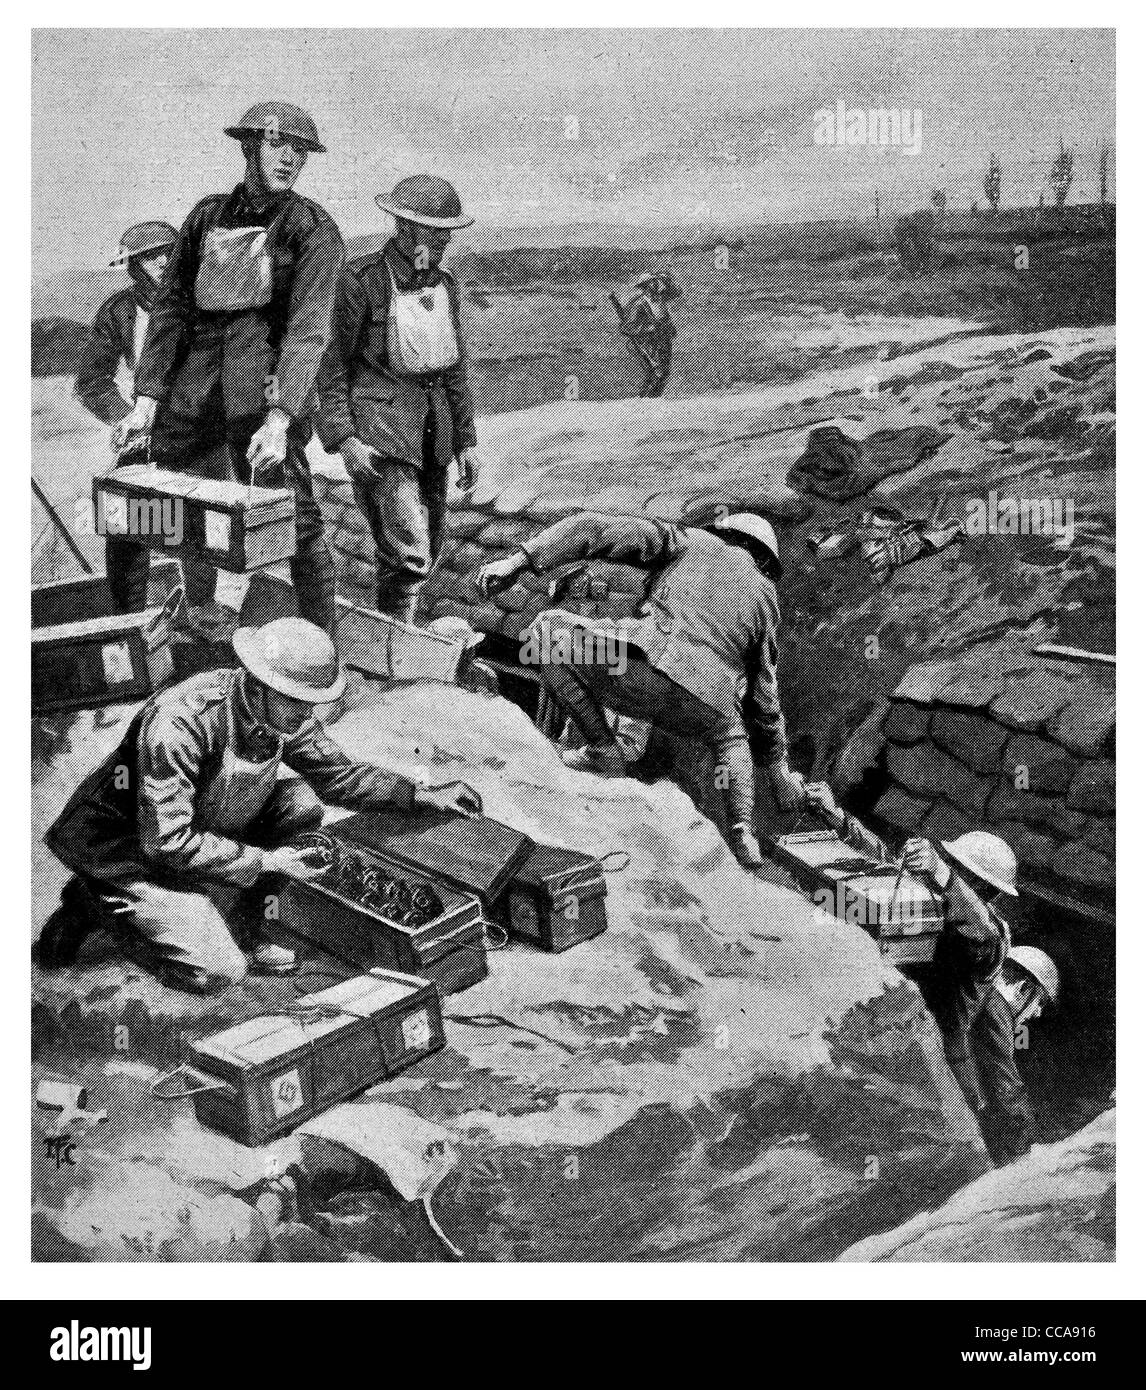 1917 2e ligne d'approvisionnement de l'armée britannique deuxième bombes à sous-munitions sac de sable de tranchée de mur de munitions explosifs logistique grenade à main Banque D'Images